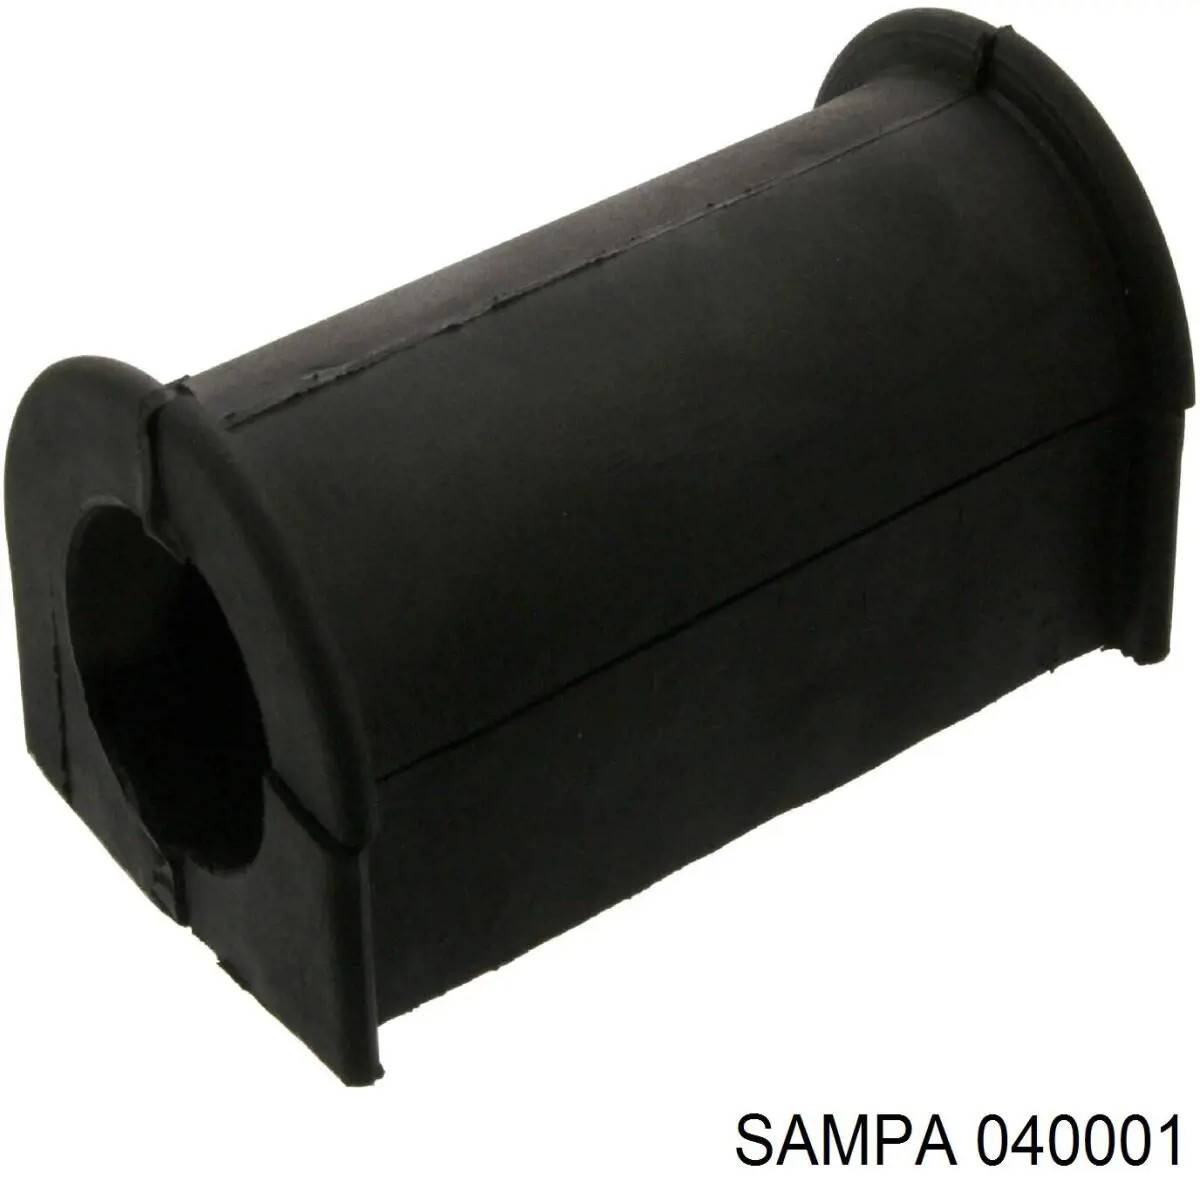 040.001 Sampa Otomotiv‏ casquillo de barra estabilizadora delantera